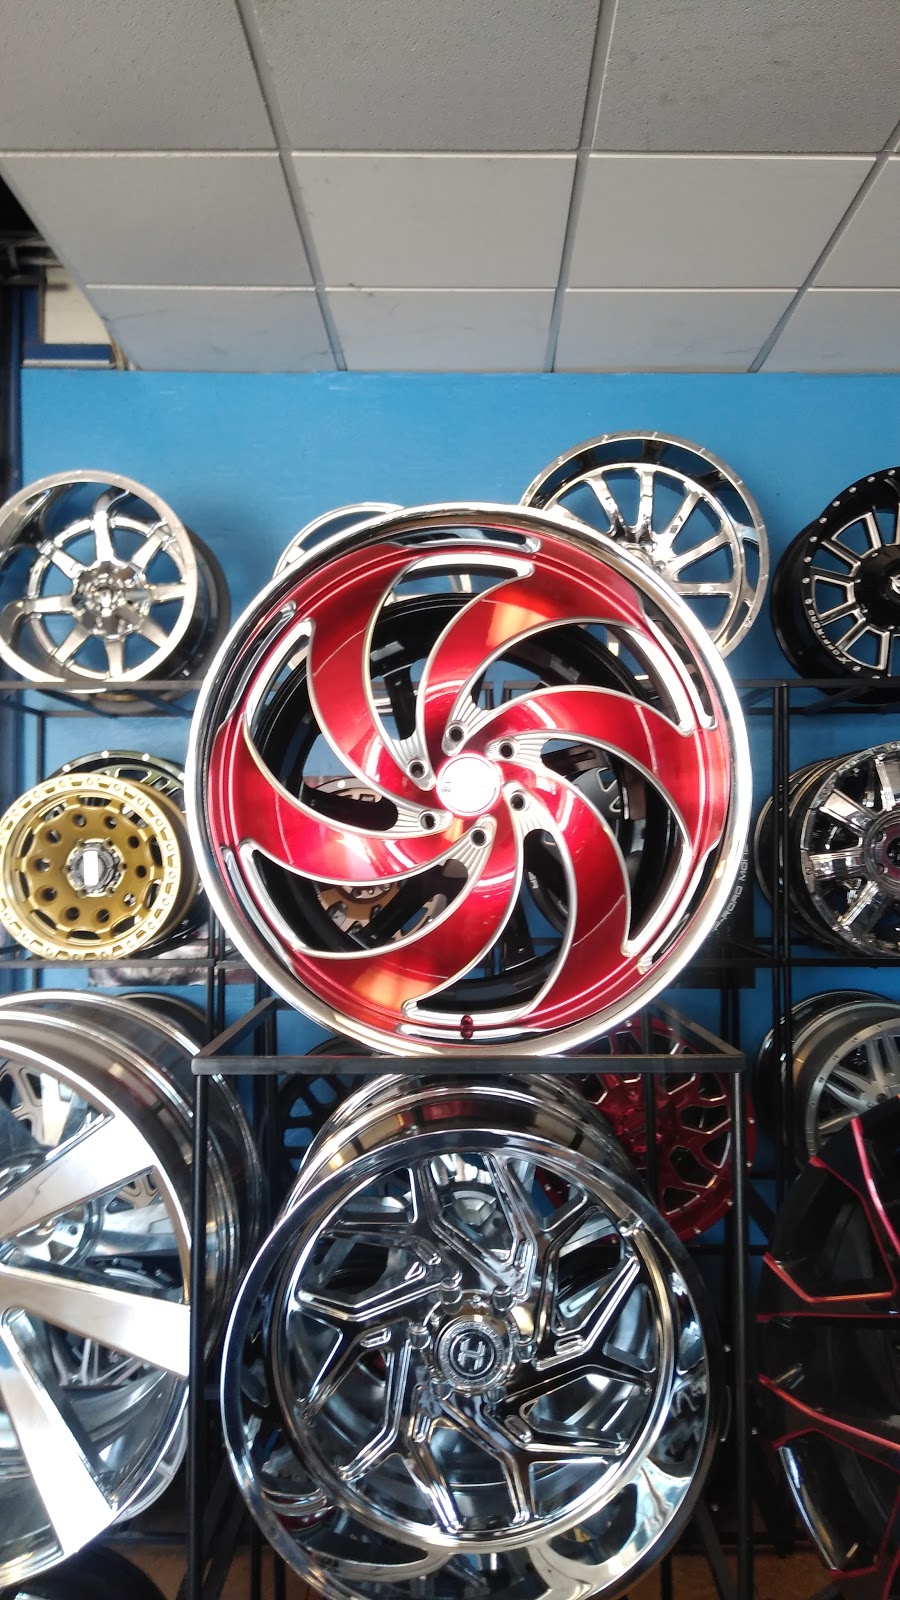 Az famous wheels & tires | 3423 N 43rd Ave, Phoenix, AZ 85019, USA | Phone: (602) 237-5415